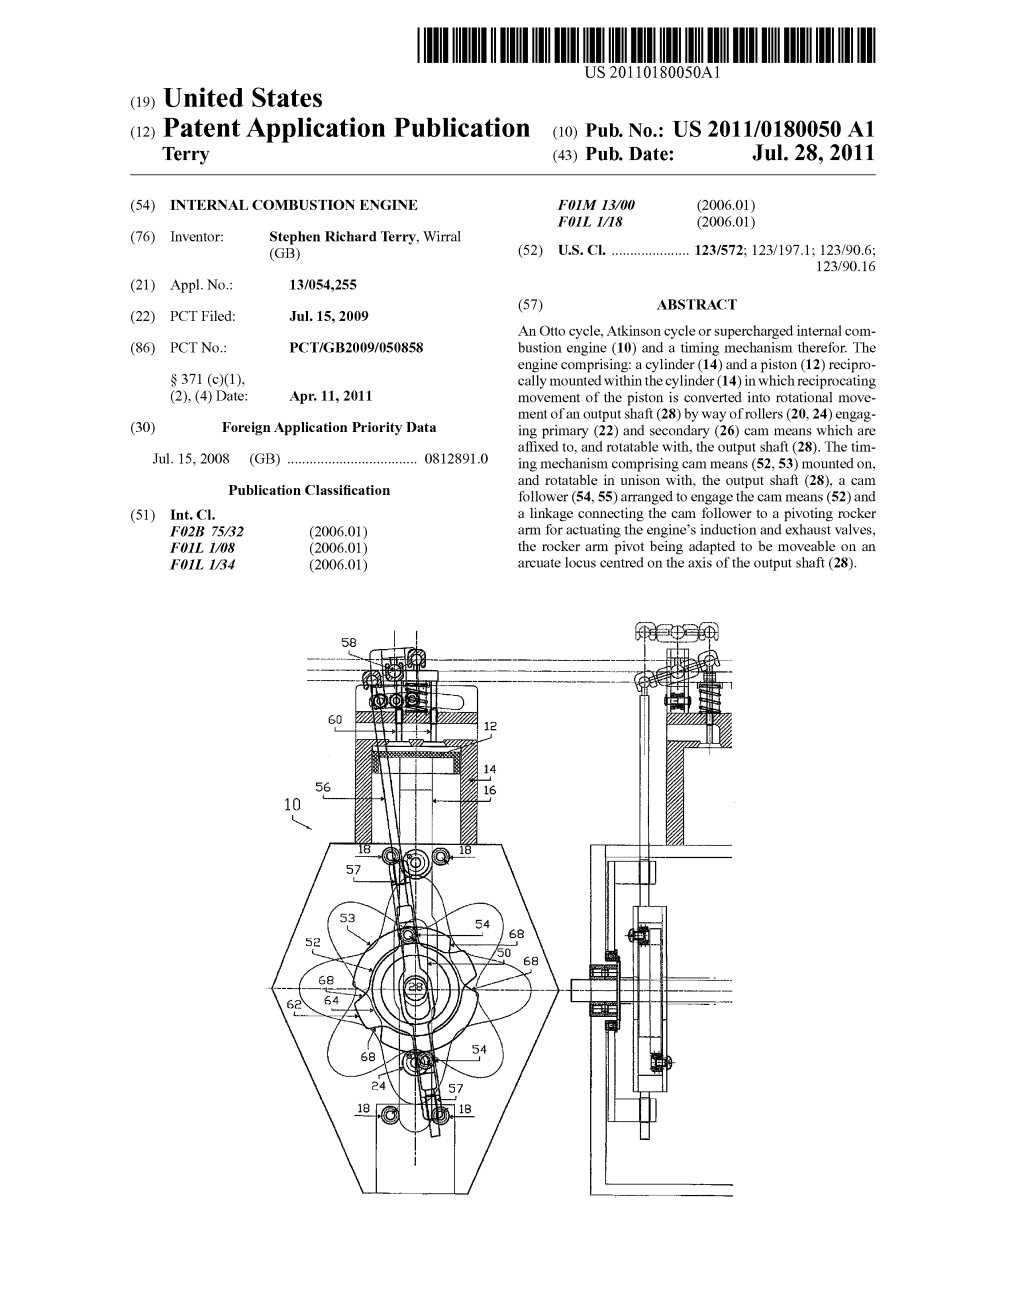 (12) Patent Application Publication (10) Pub. No.: US 2011/0180050 A1 Terry (43) Pub